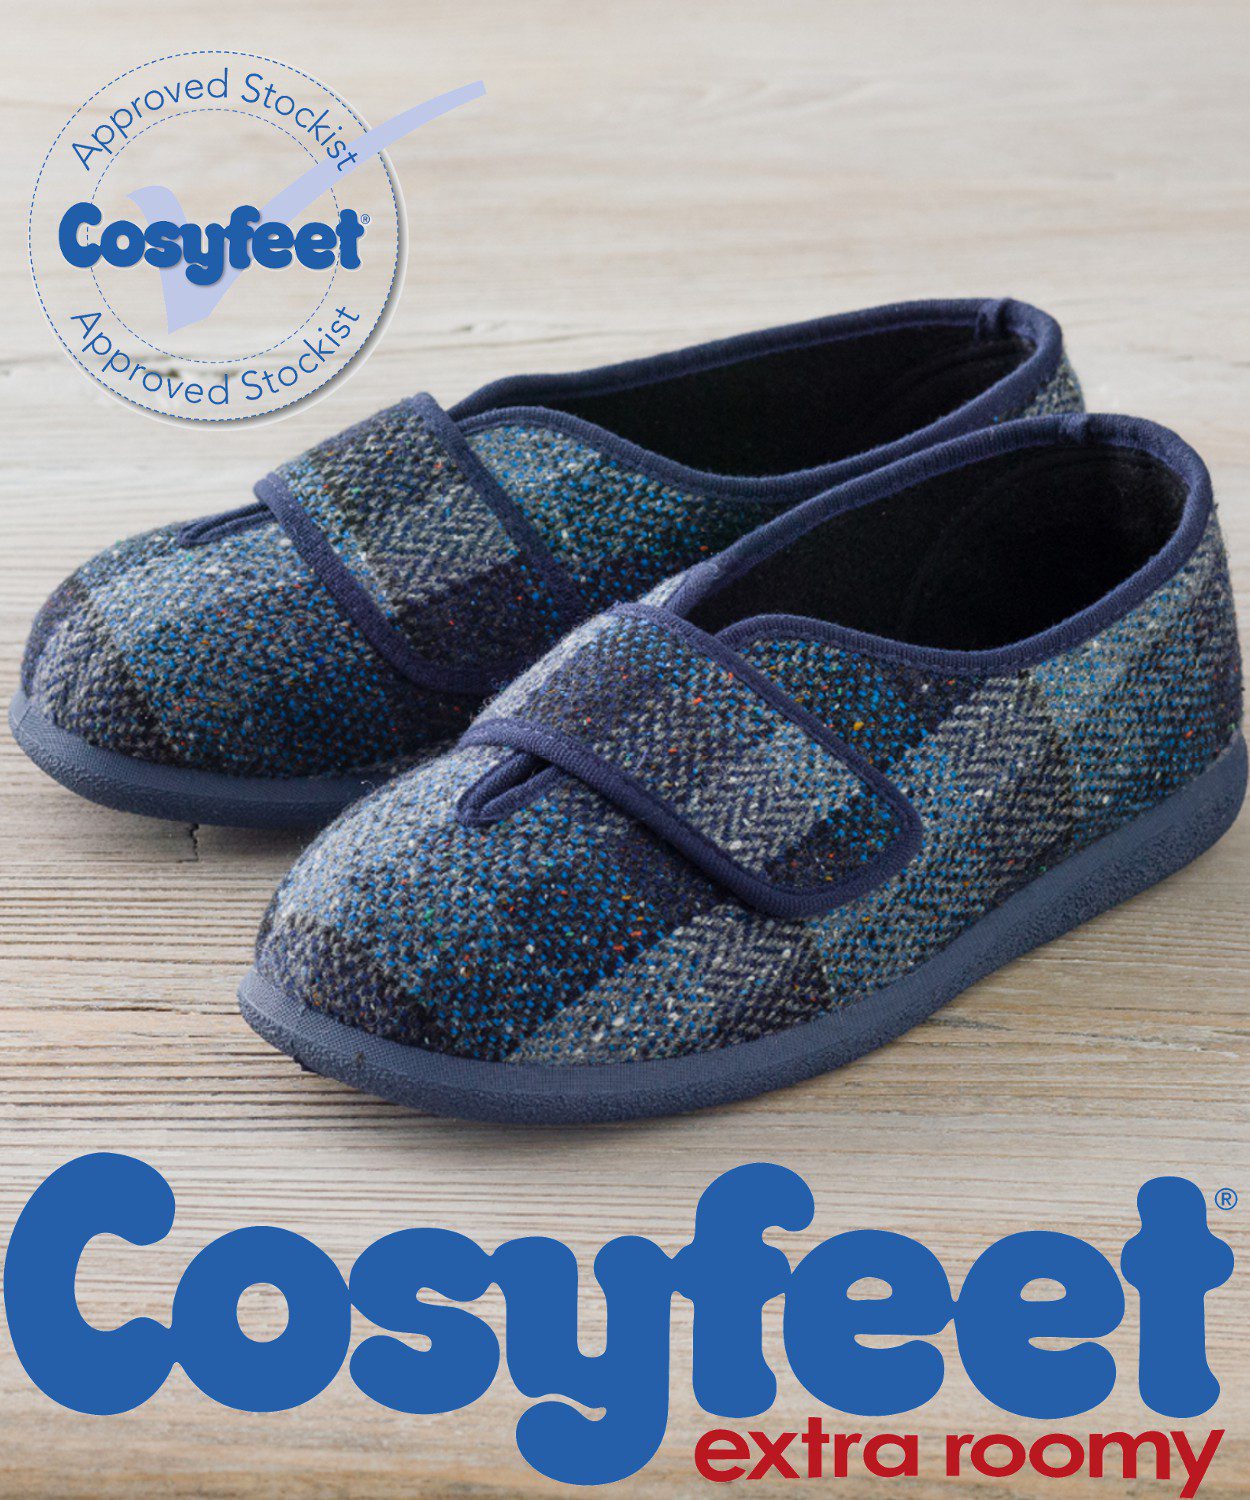 cosyfeet men's shoes